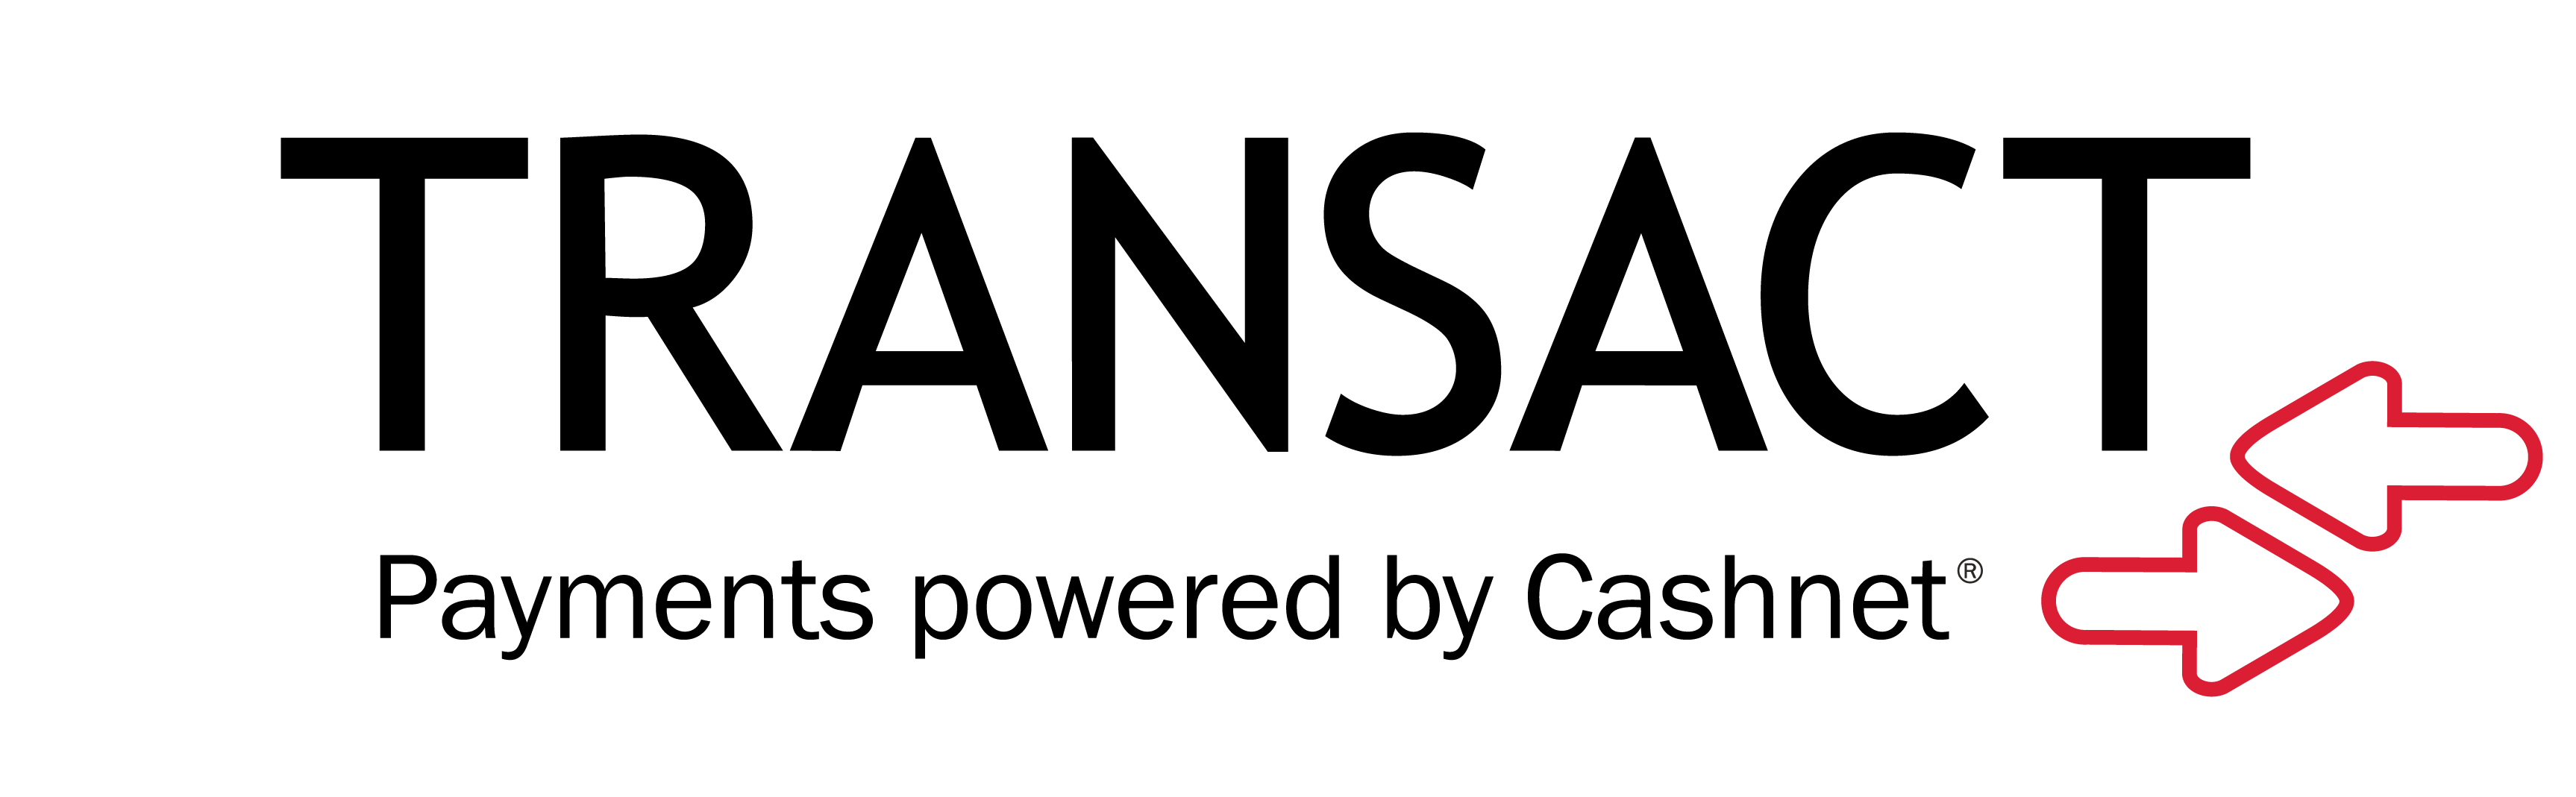 TRANSACT logo